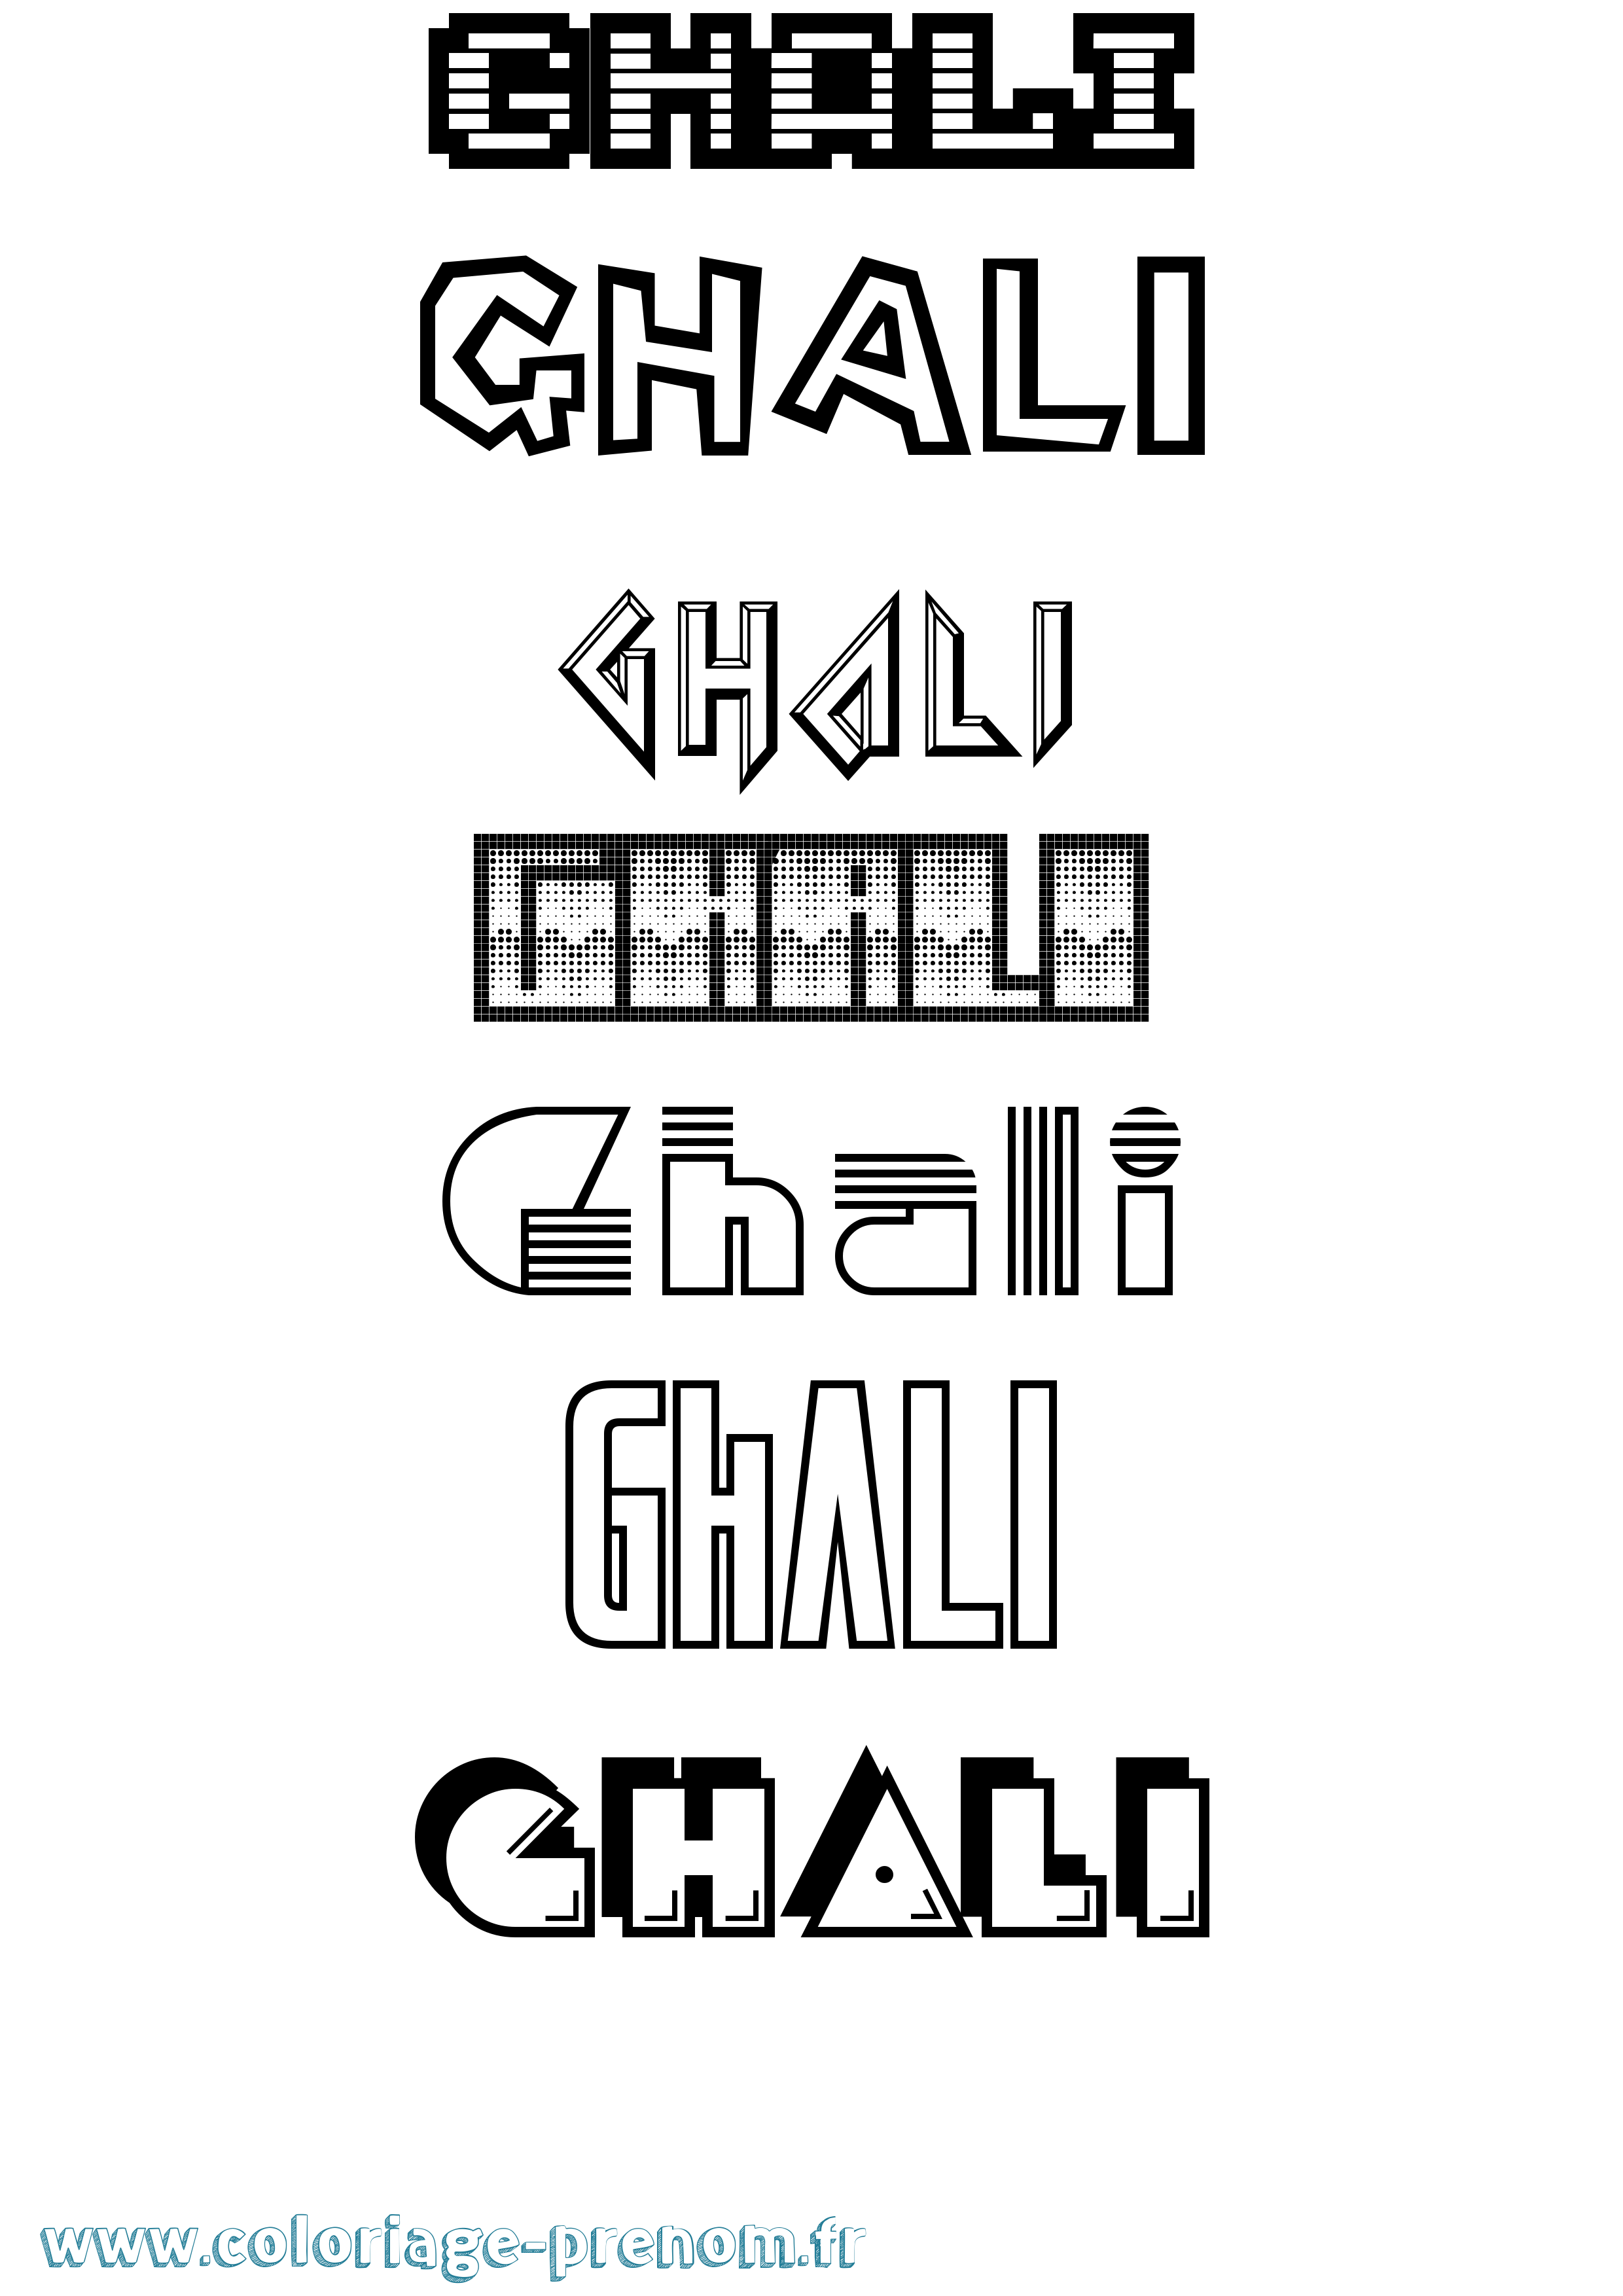 Coloriage prénom Ghali Jeux Vidéos